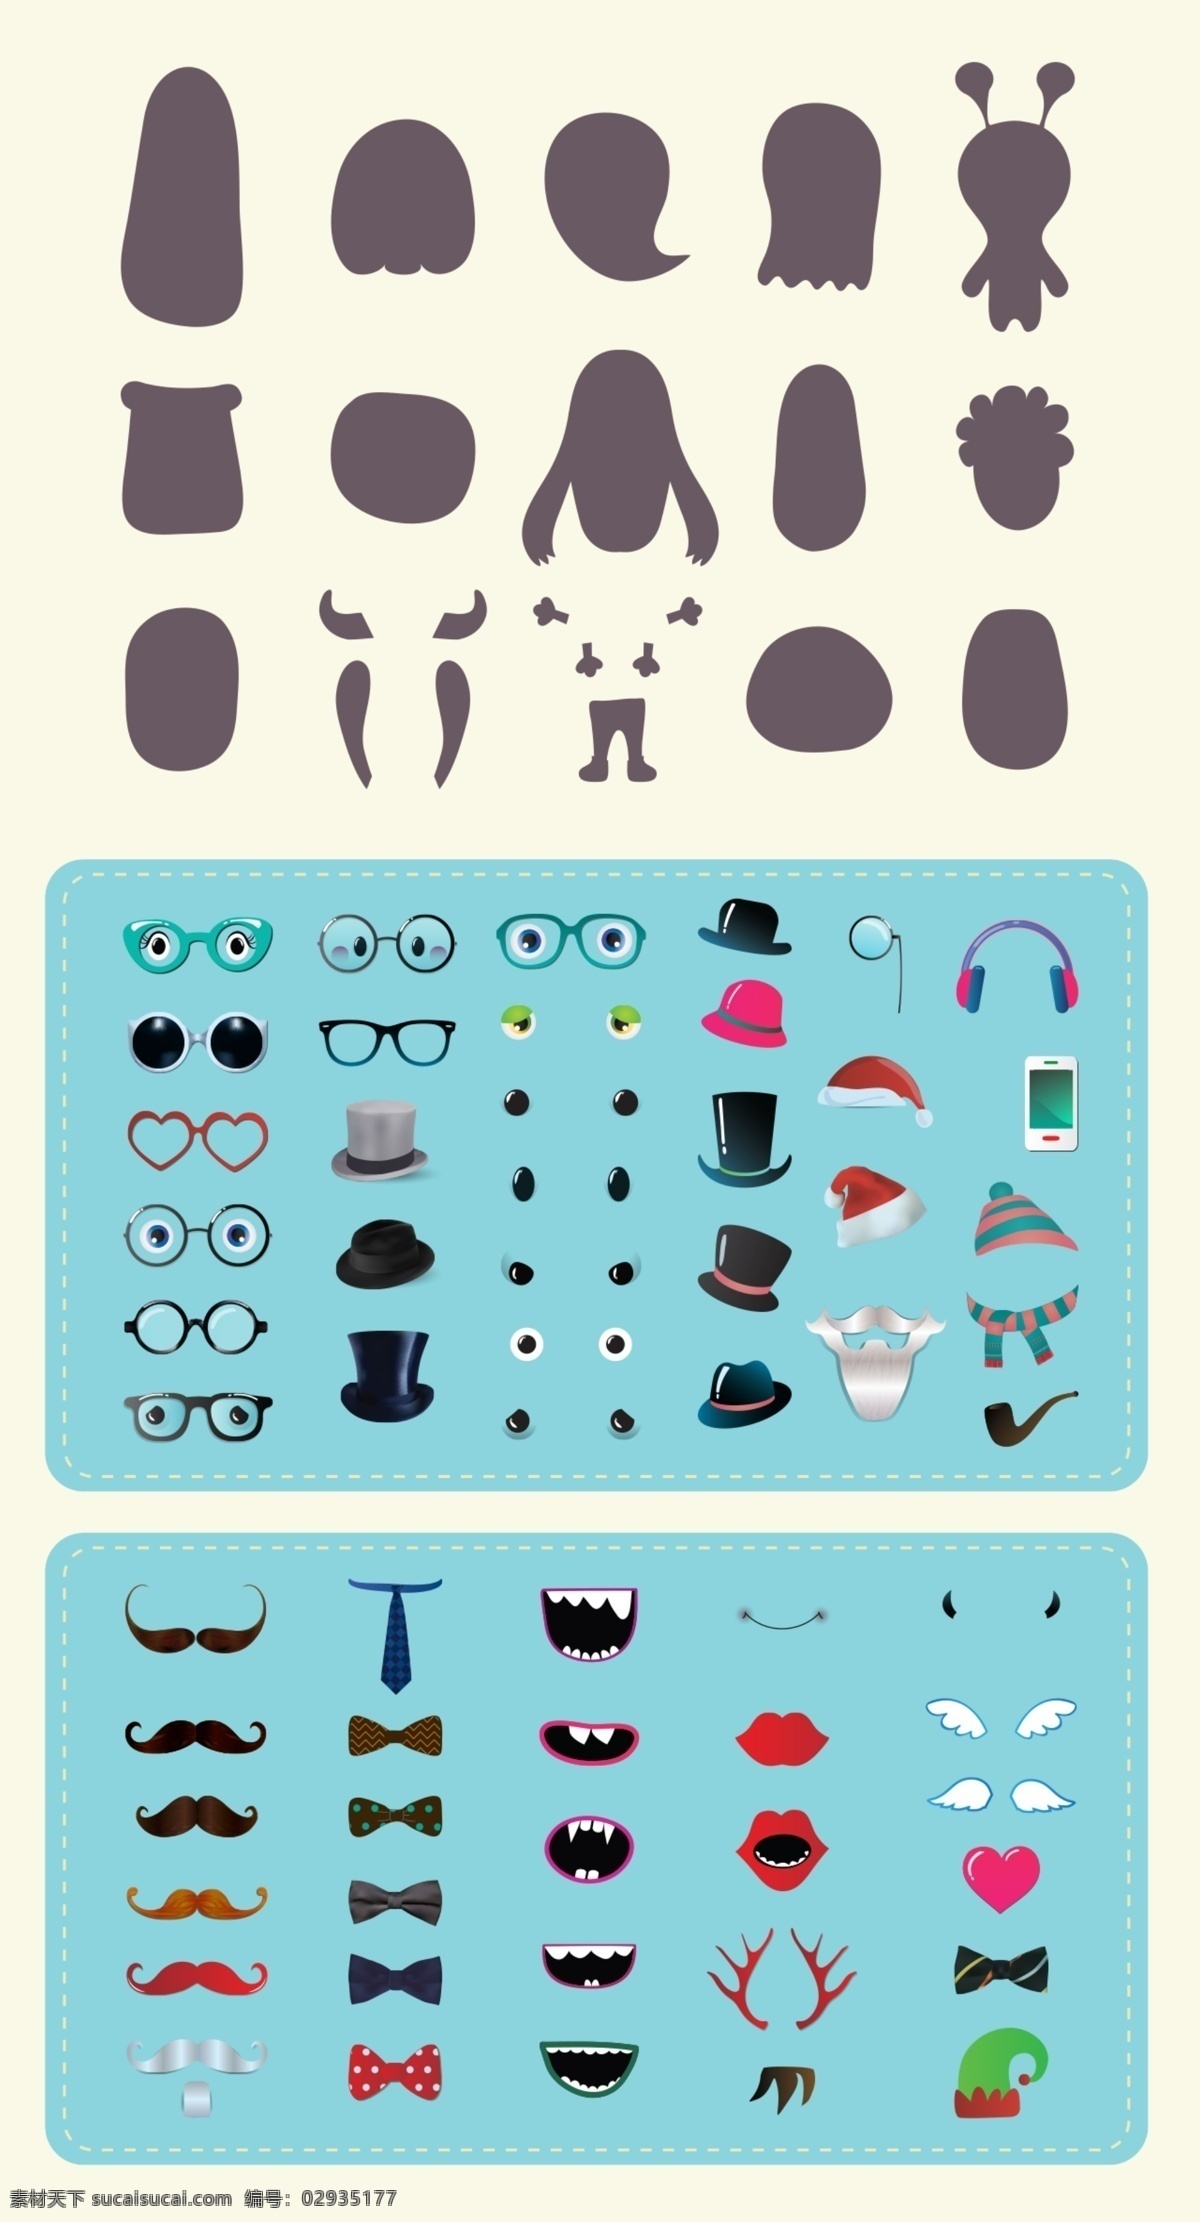 款 眼镜 配饰 图标 icon 图片列表 互联网 社交 网页界面 简约 卡通 创意 插画 媒体 品牌 标识 眼镜图标 icon下载